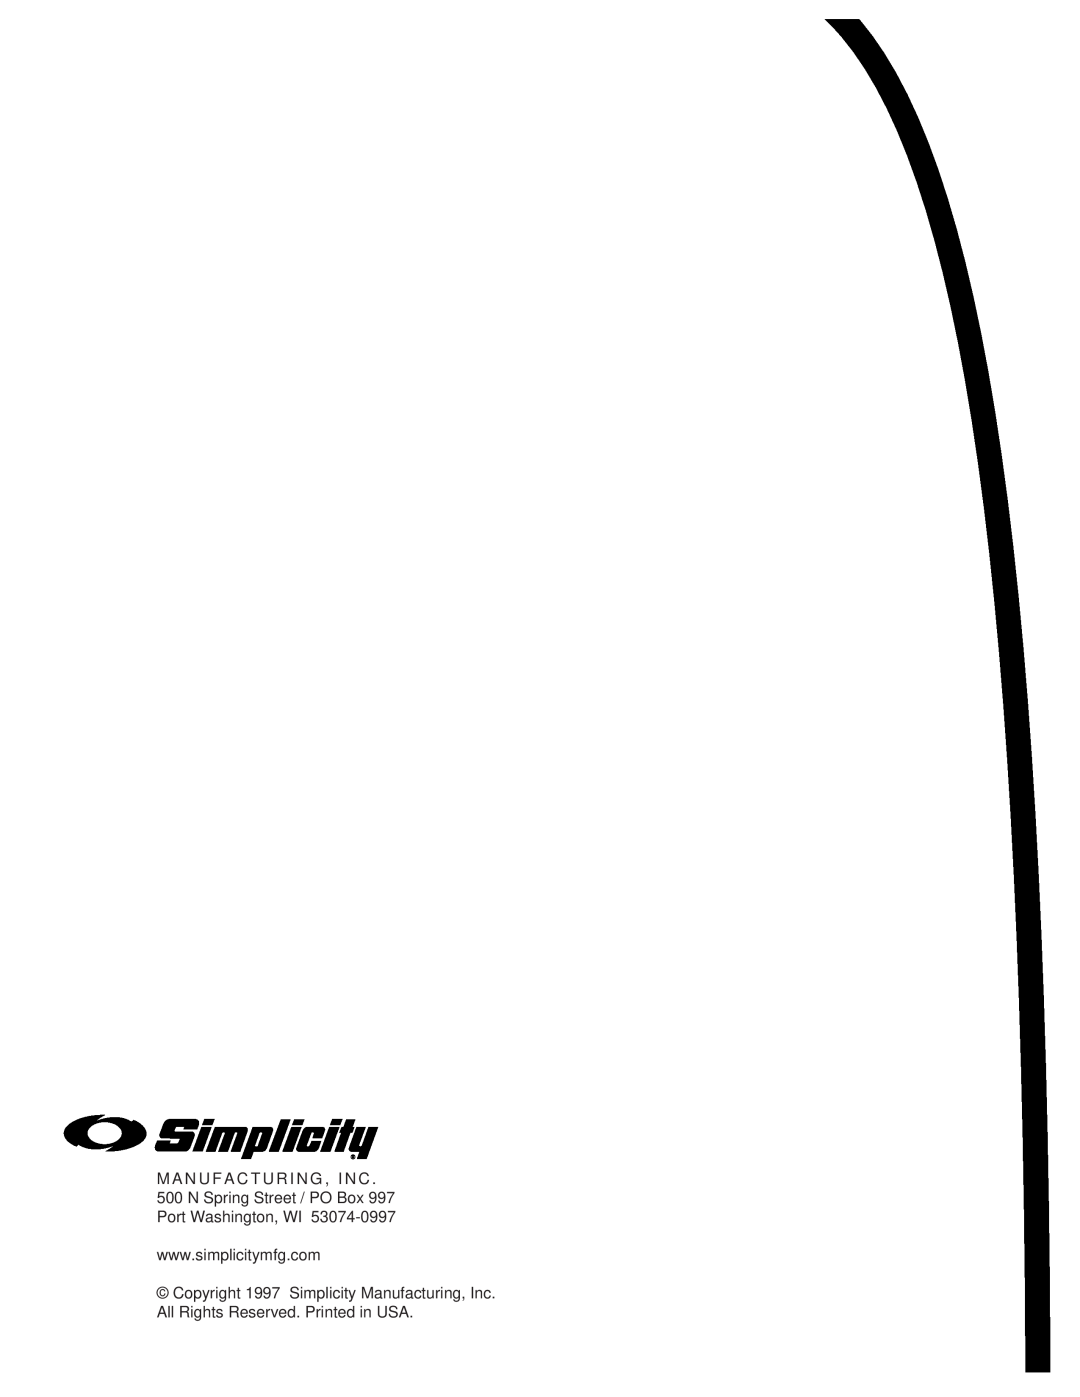 Simplicity 14HP, 11HP manual 